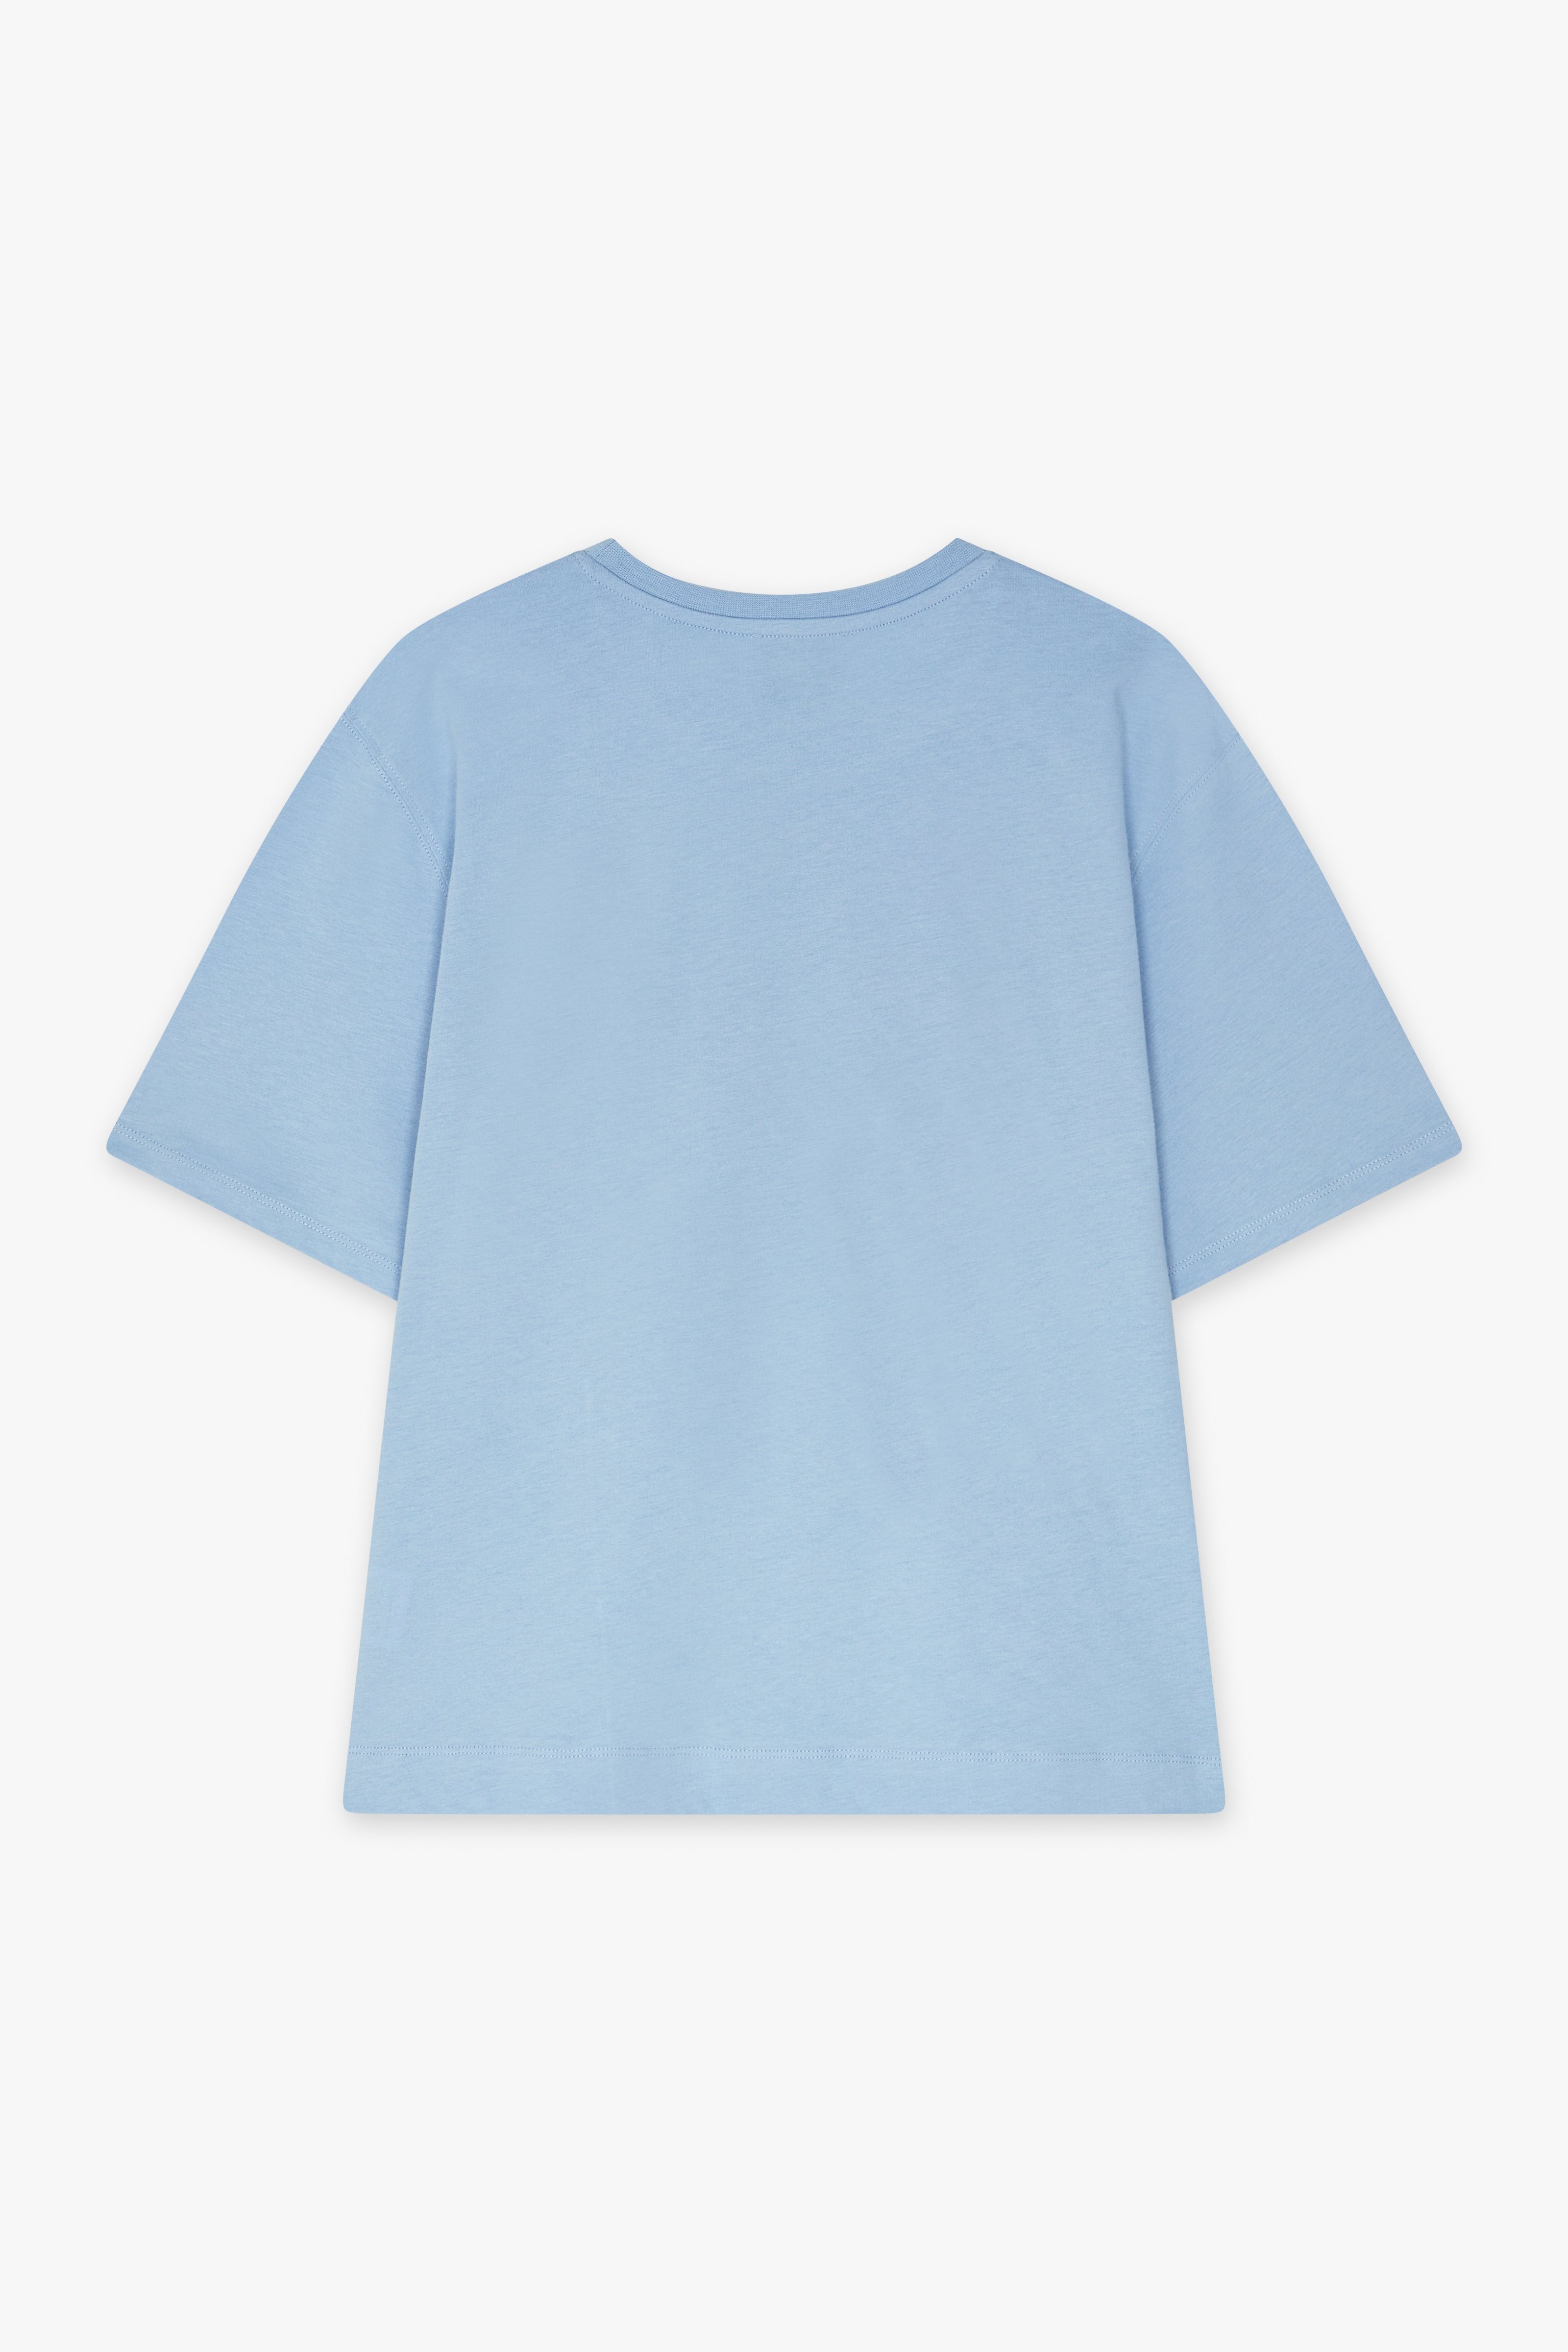 CKS Dames - SARIA - t-shirt à manches courtes - bleu clair